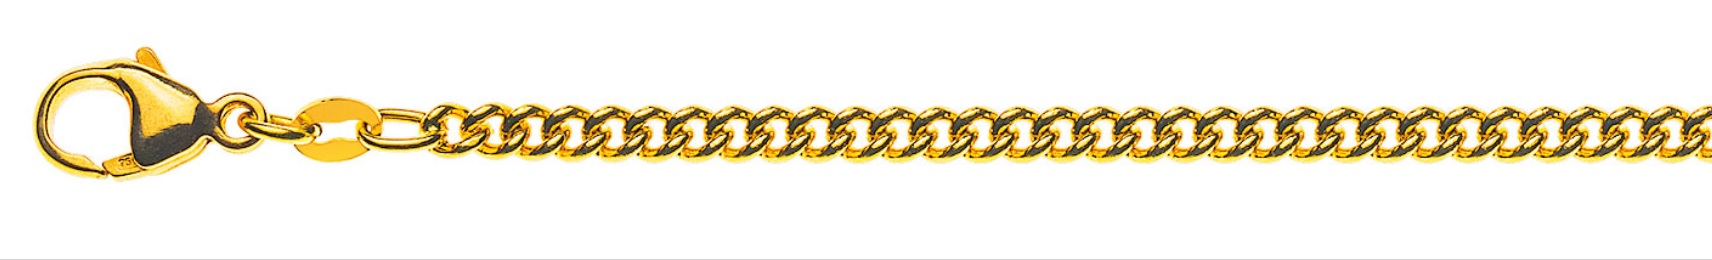 AURONOS Prestige Collier en or jaune 18K chaîne blindée ronde 50cm 2.8mm